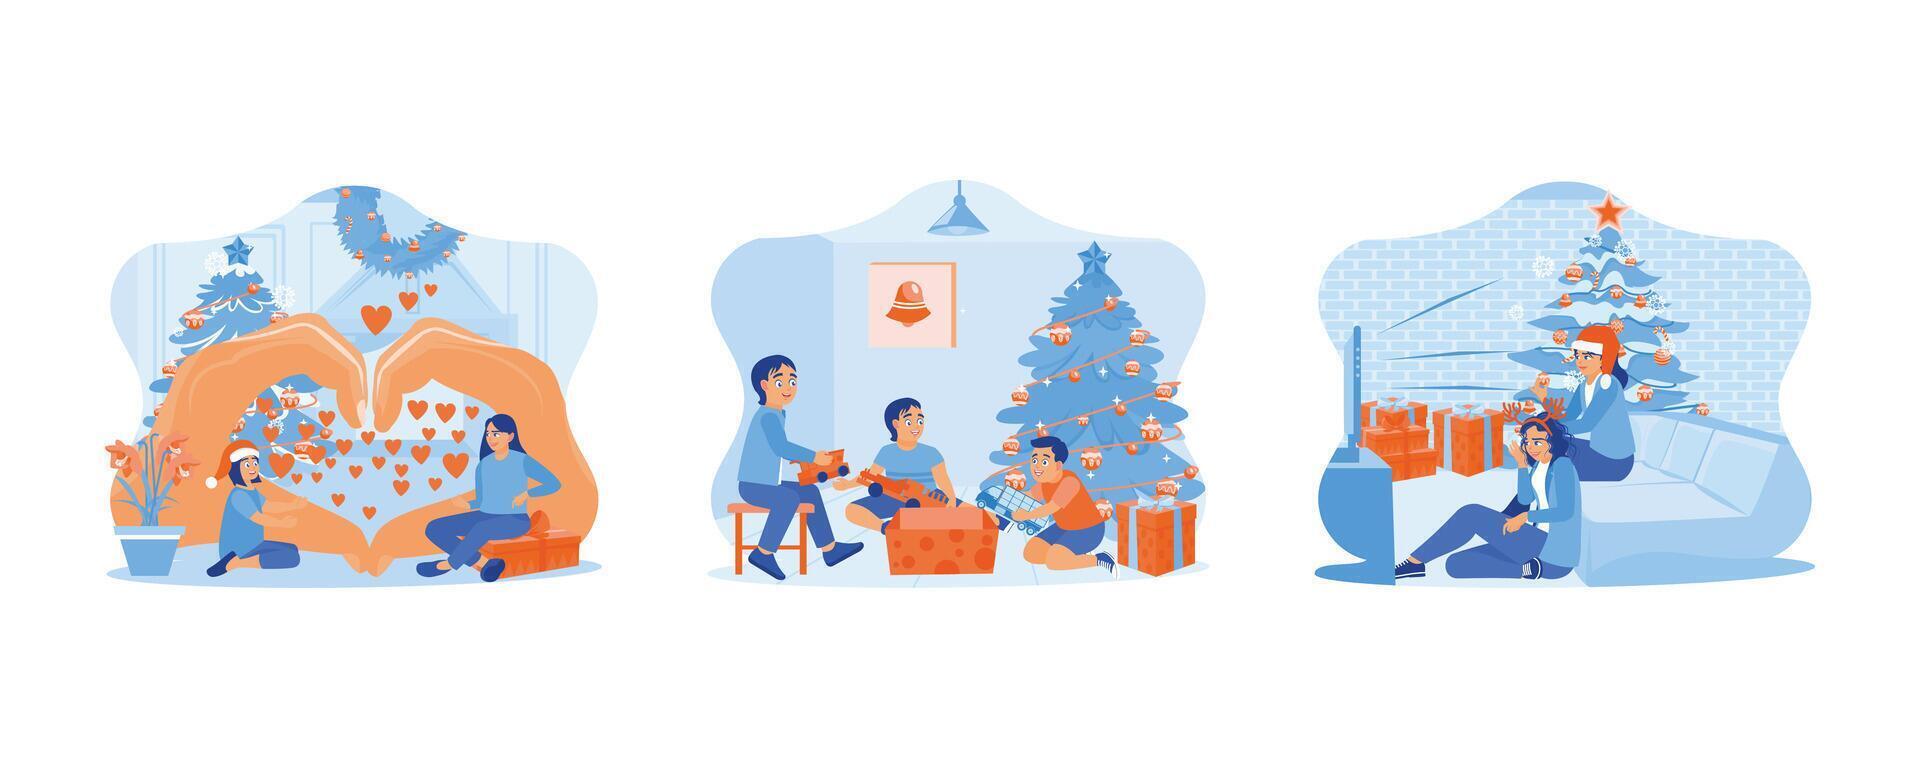 familie sharing Kerstmis vooravond. drie weinig kinderen opening Kerstmis presenteert samen onder de Kerstmis boom. twee vrouw vrienden zittend samen in de buurt de Kerstmis boom. vector